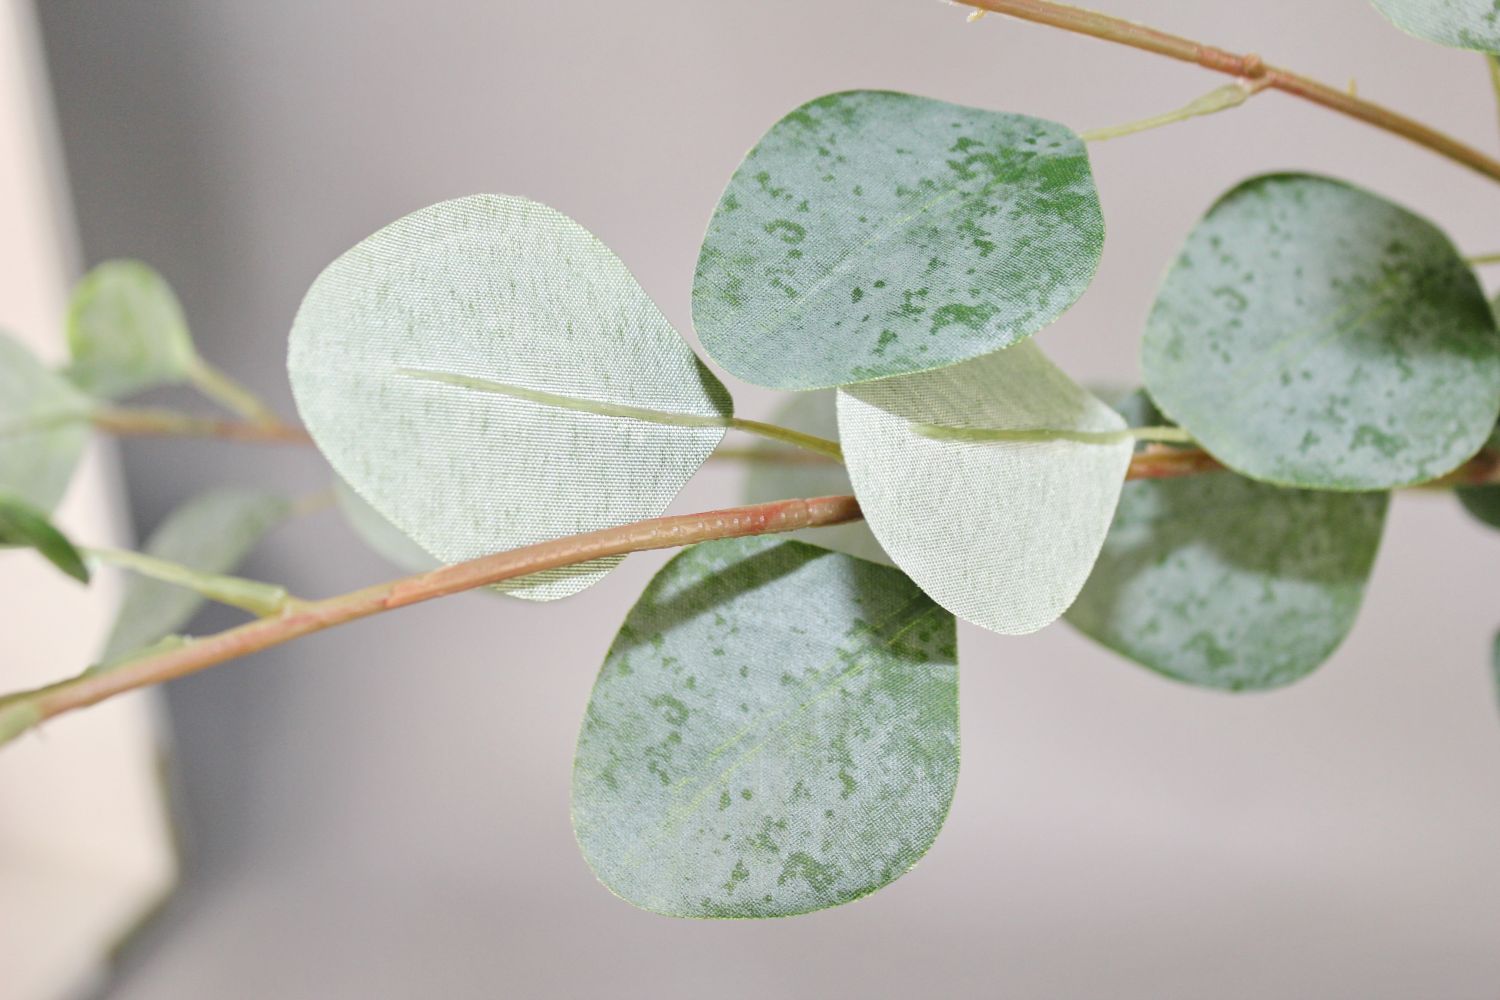 Eukalyptuszweig 118 grün Kunstblumen Pflanzen cm ca. /